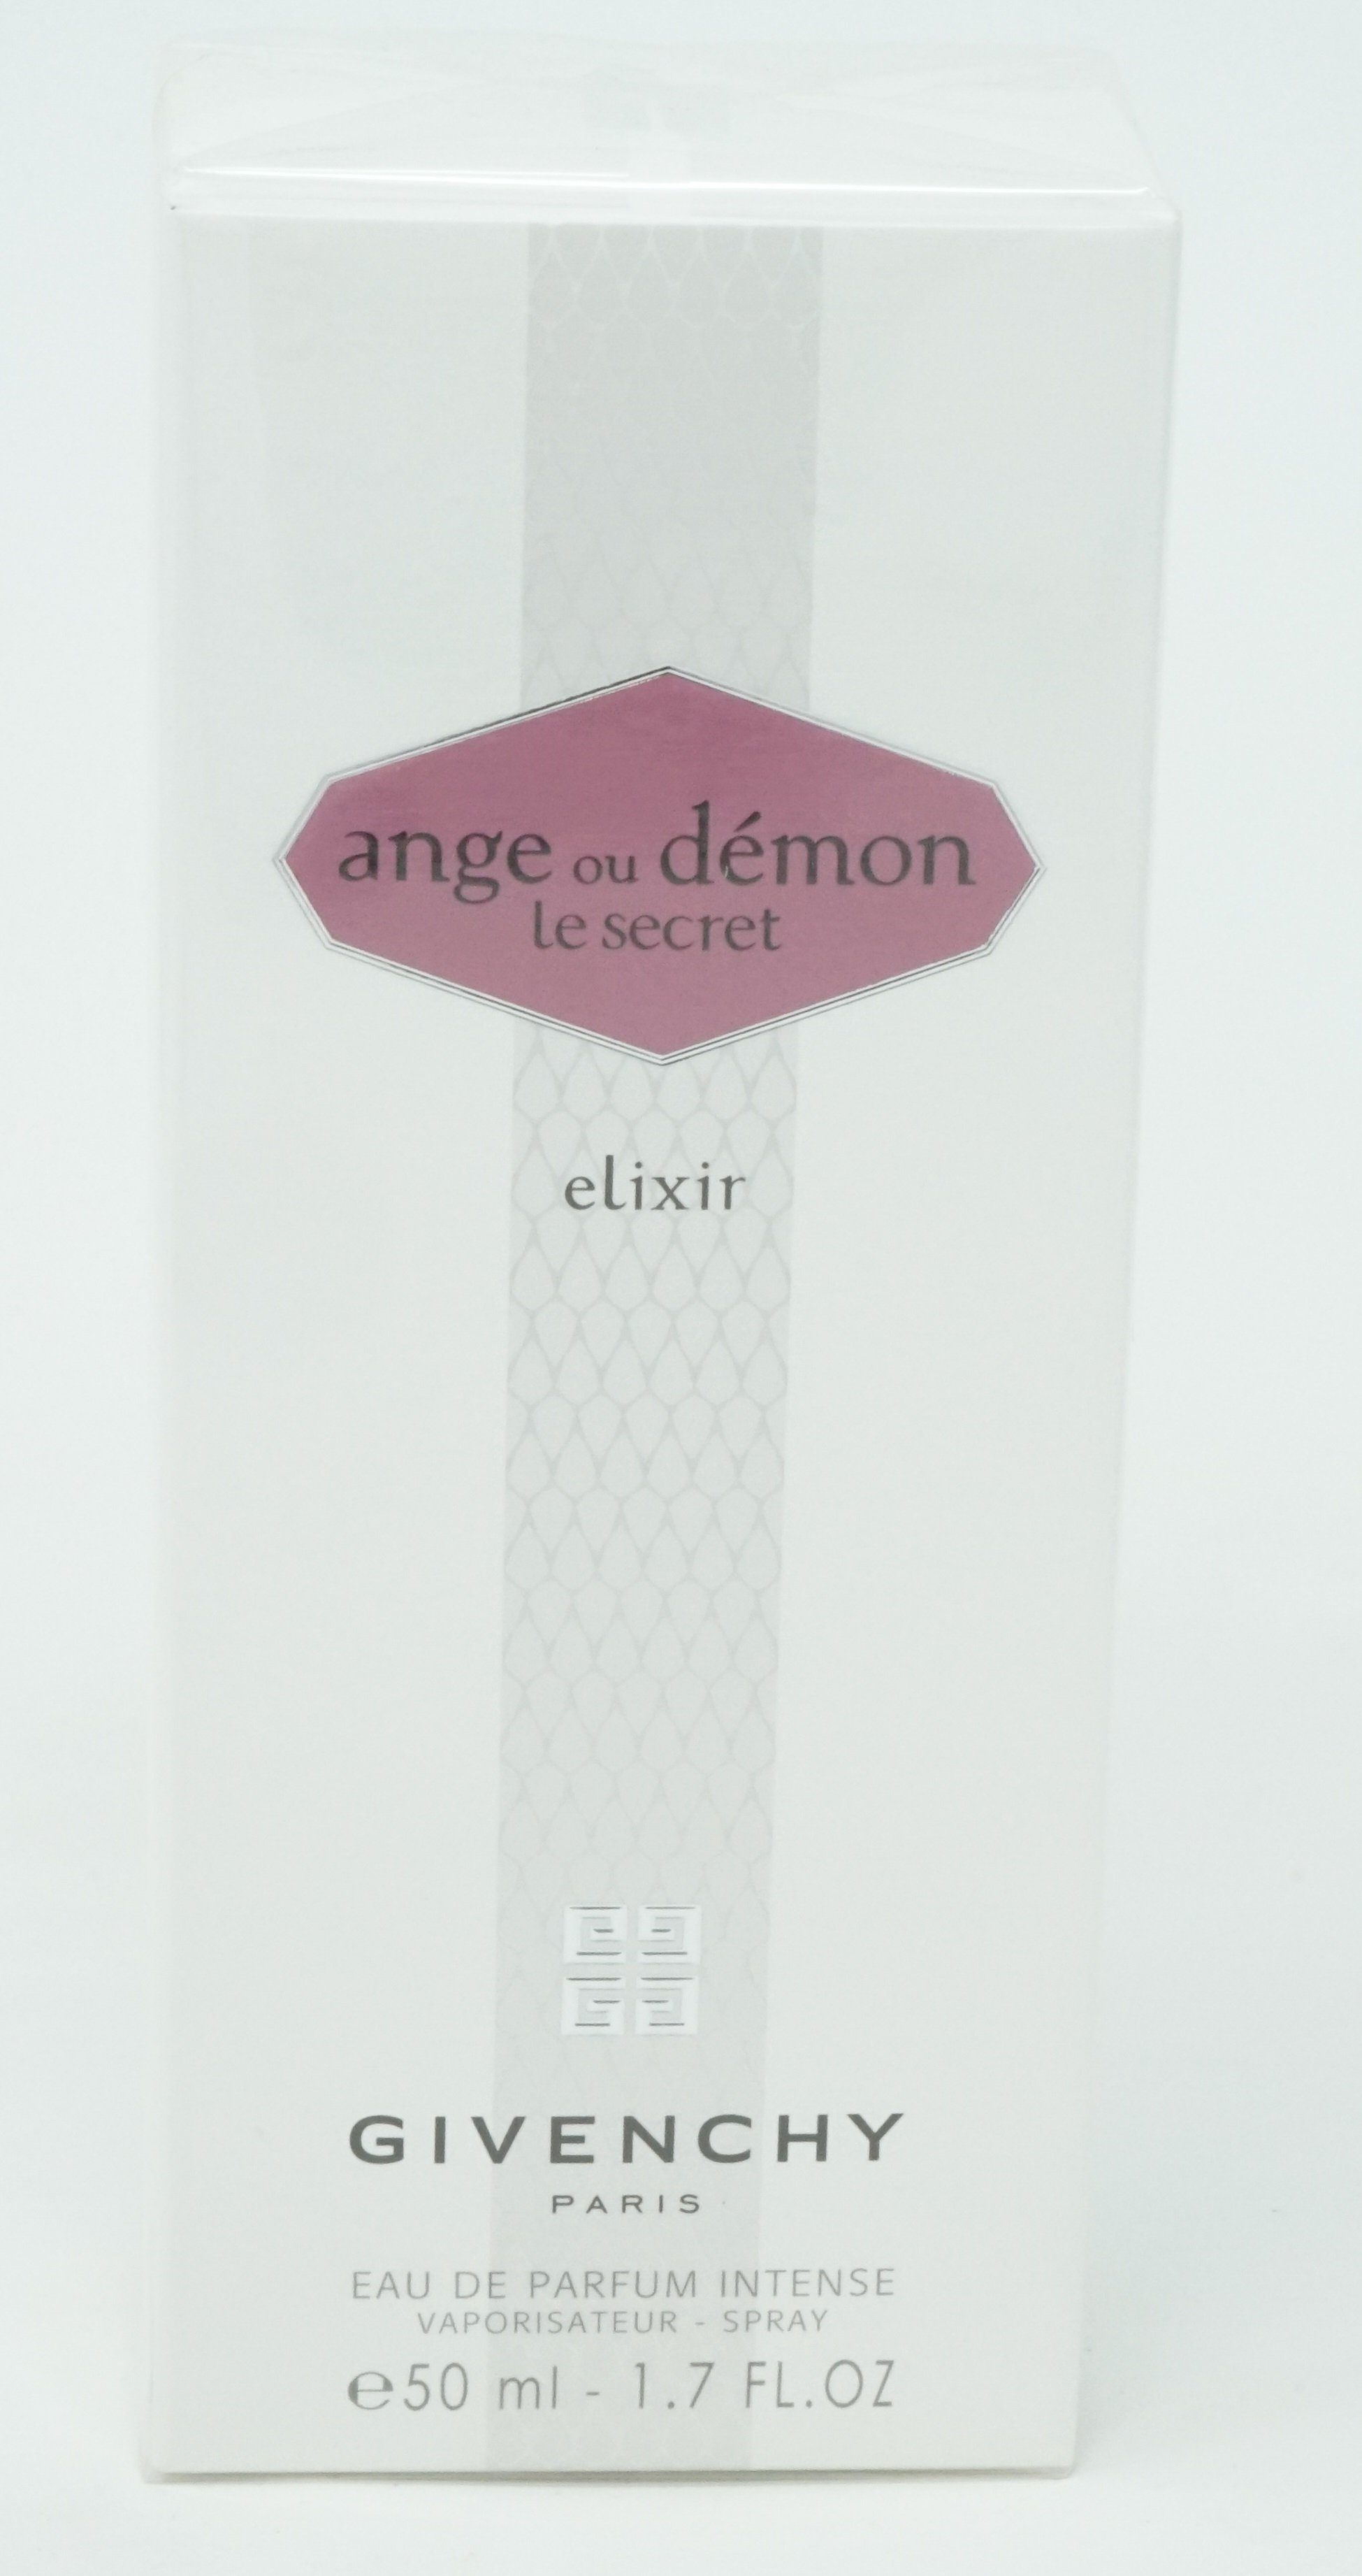 Demon de GIVENCHY de ou Eau Secret Intense Parfum Le Elixir Givenchy Parfum Ange Eau 50ml